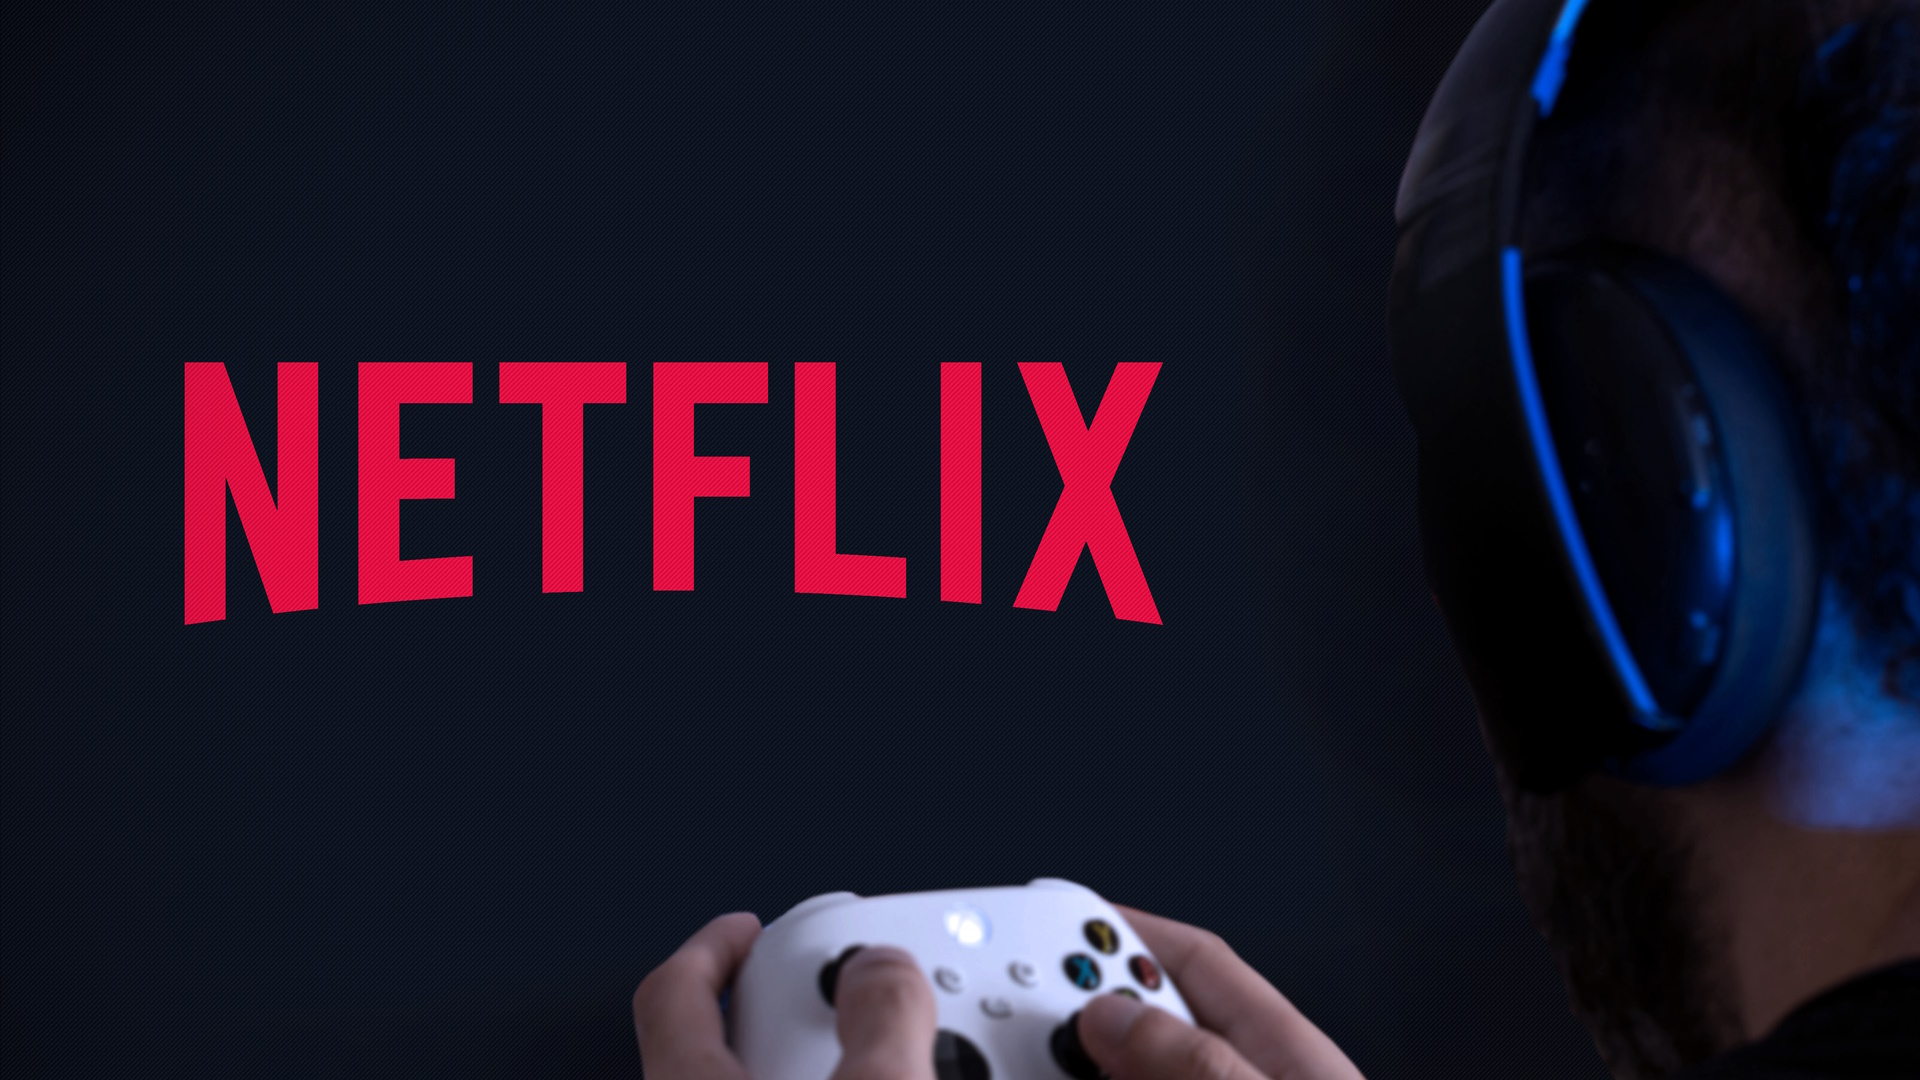 Netflix sprema igre za televizore, umesto kontrolera – telefon